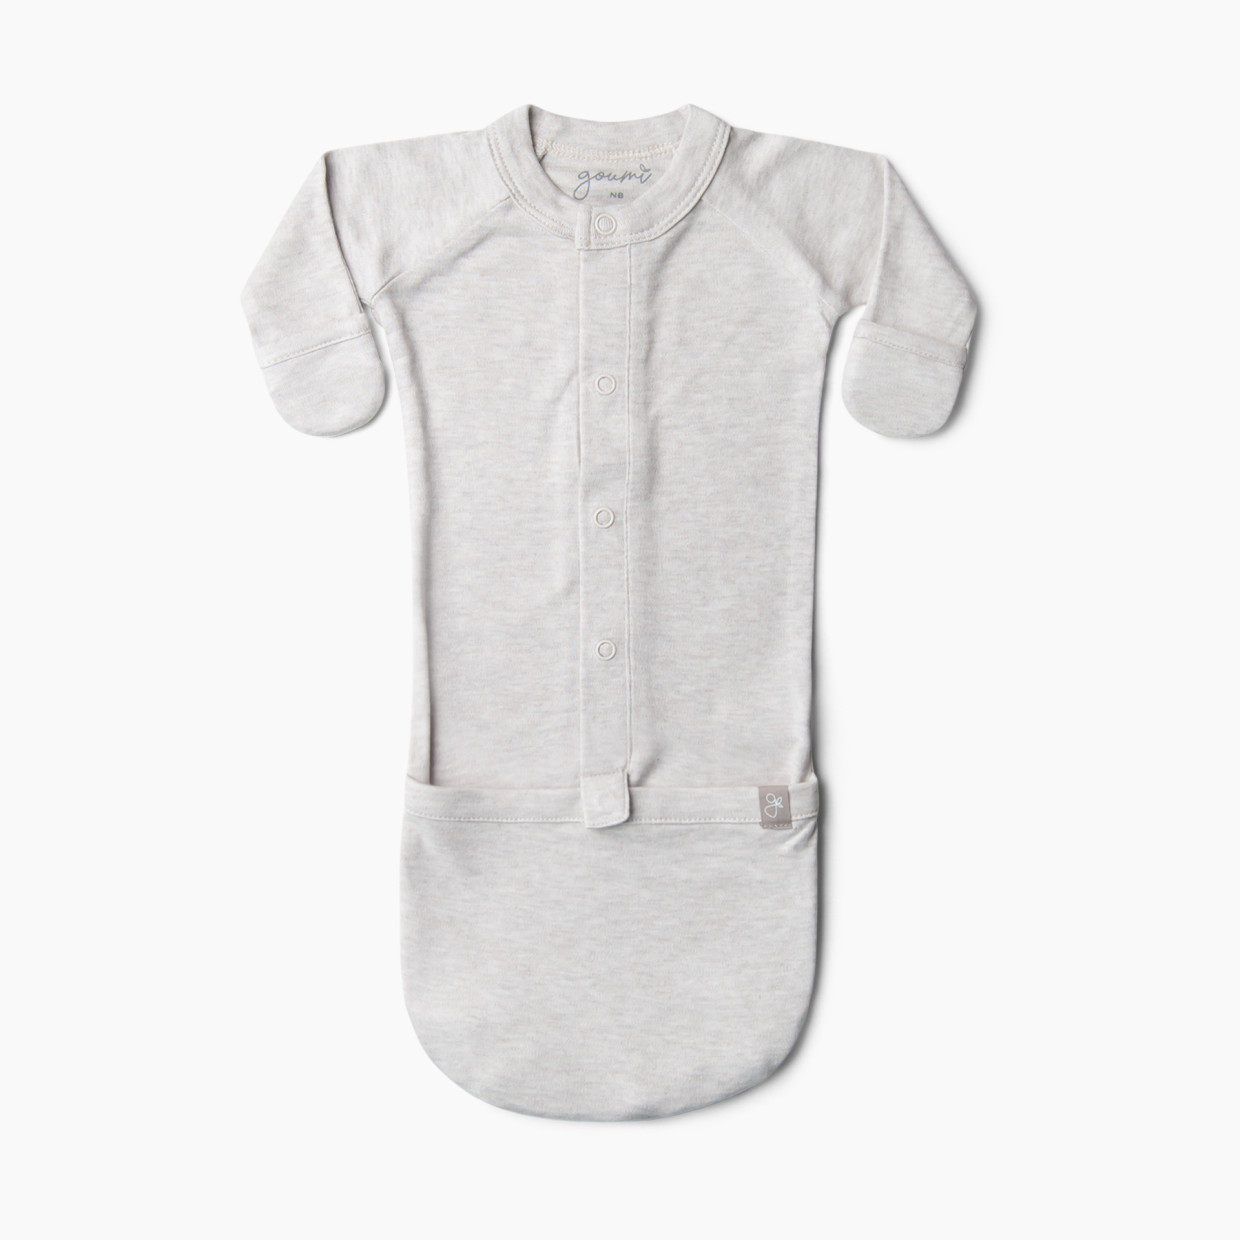 Goumi Kids 24hr Convertible Sleeper Baby Gown - Storm Gray, 0-3 M.